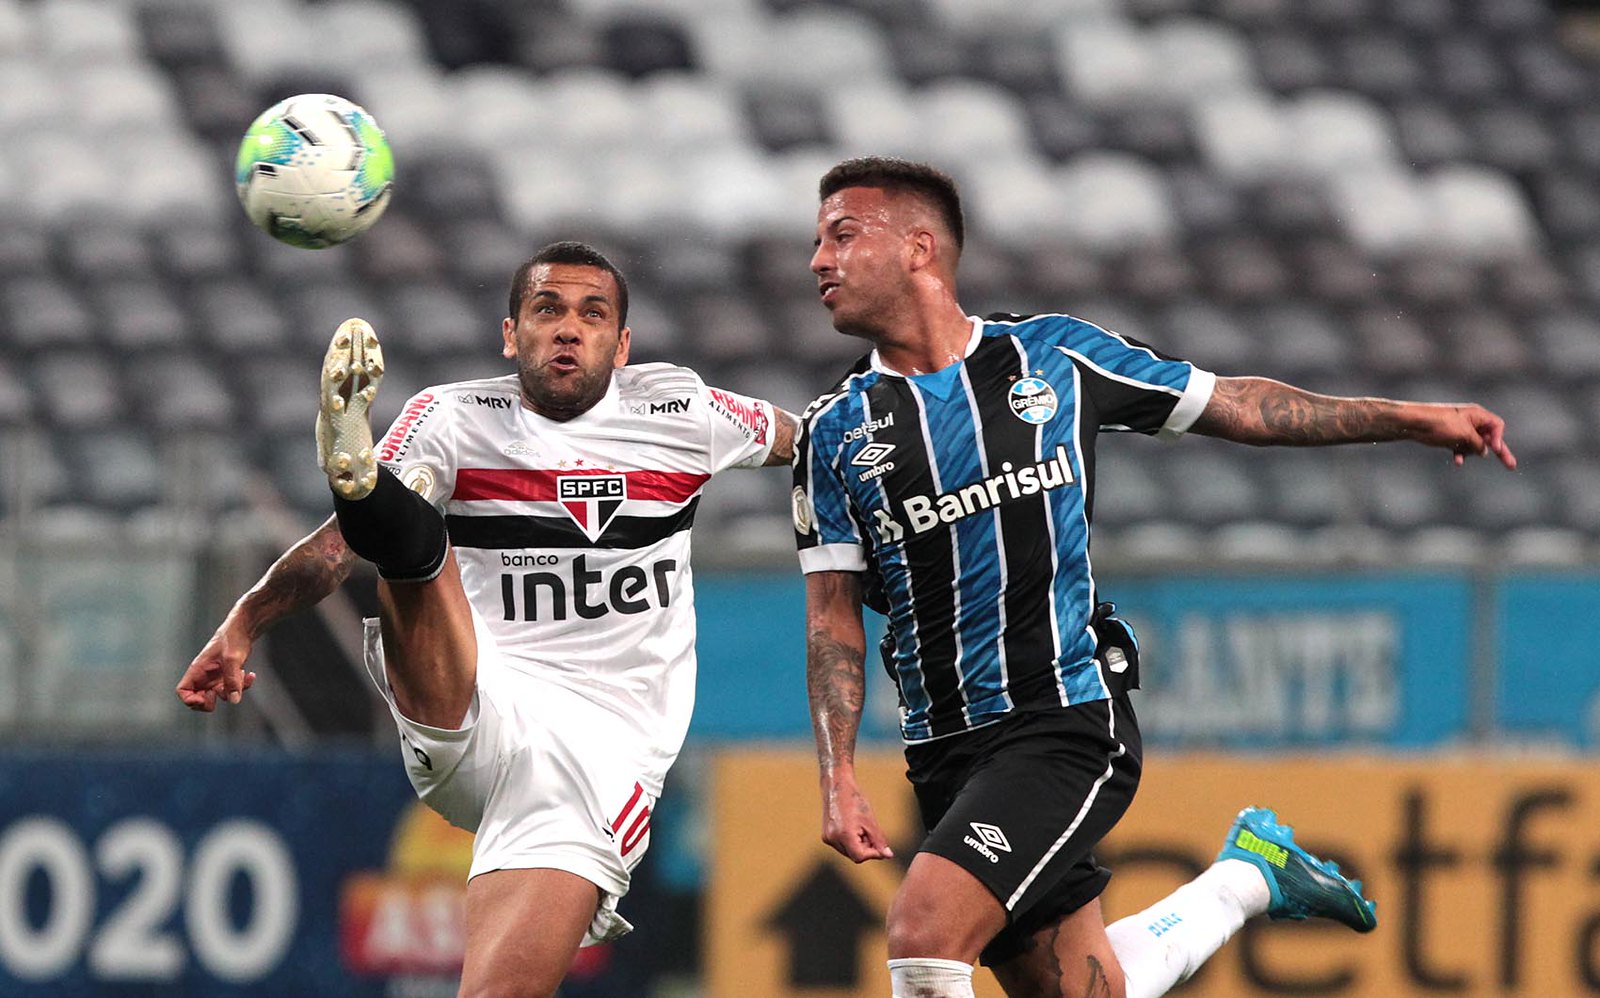 São Paulo não possui bom retrospecto nos últimos dez jogos contra o Grêmio; confira